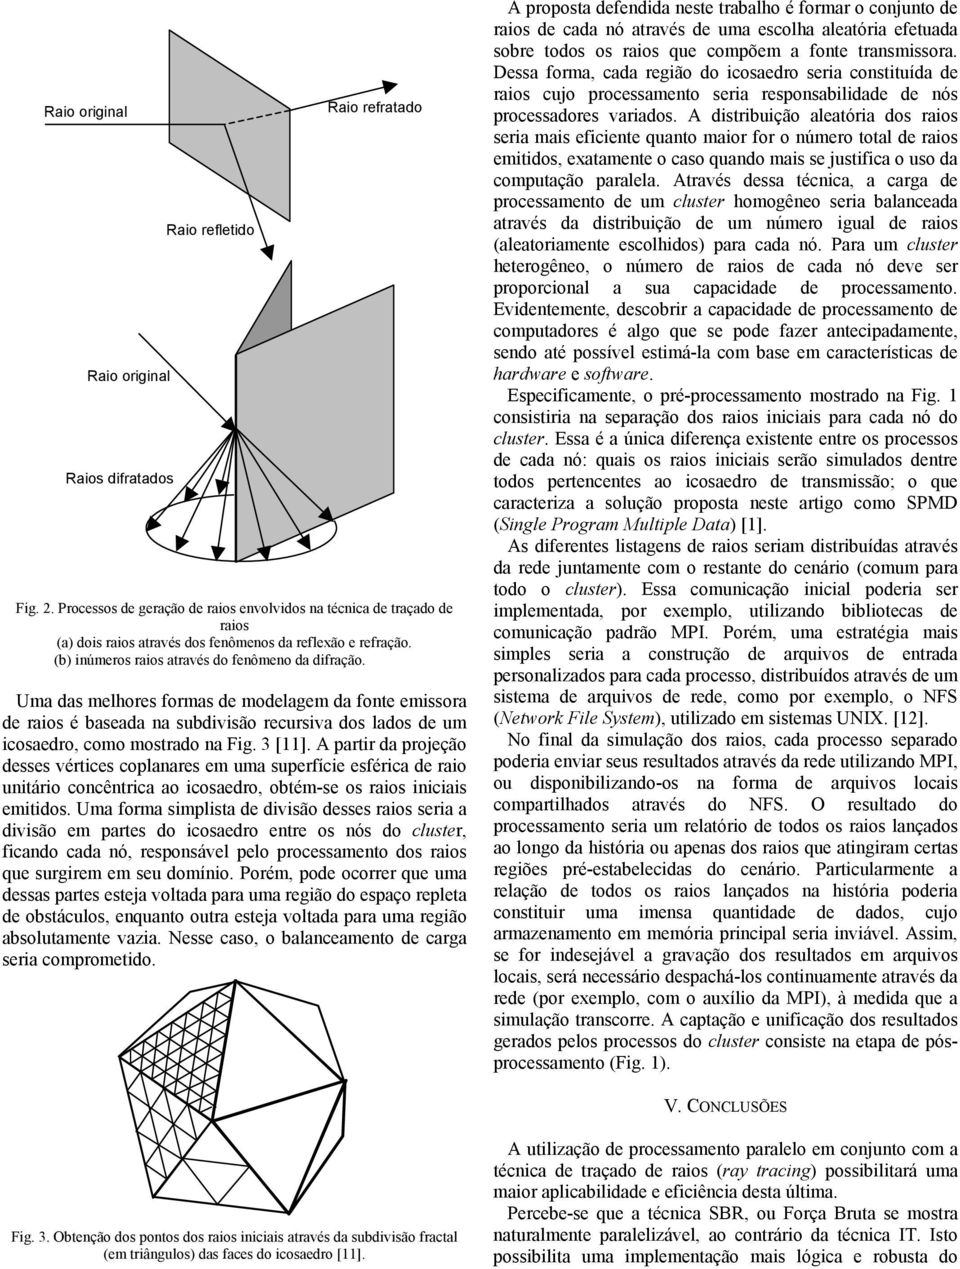 Uma das melhores formas de modelagem da fonte emissora de raios é baseada na subdivisão recursiva dos lados de um icosaedro, como mostrado na Fig. 3 [11].